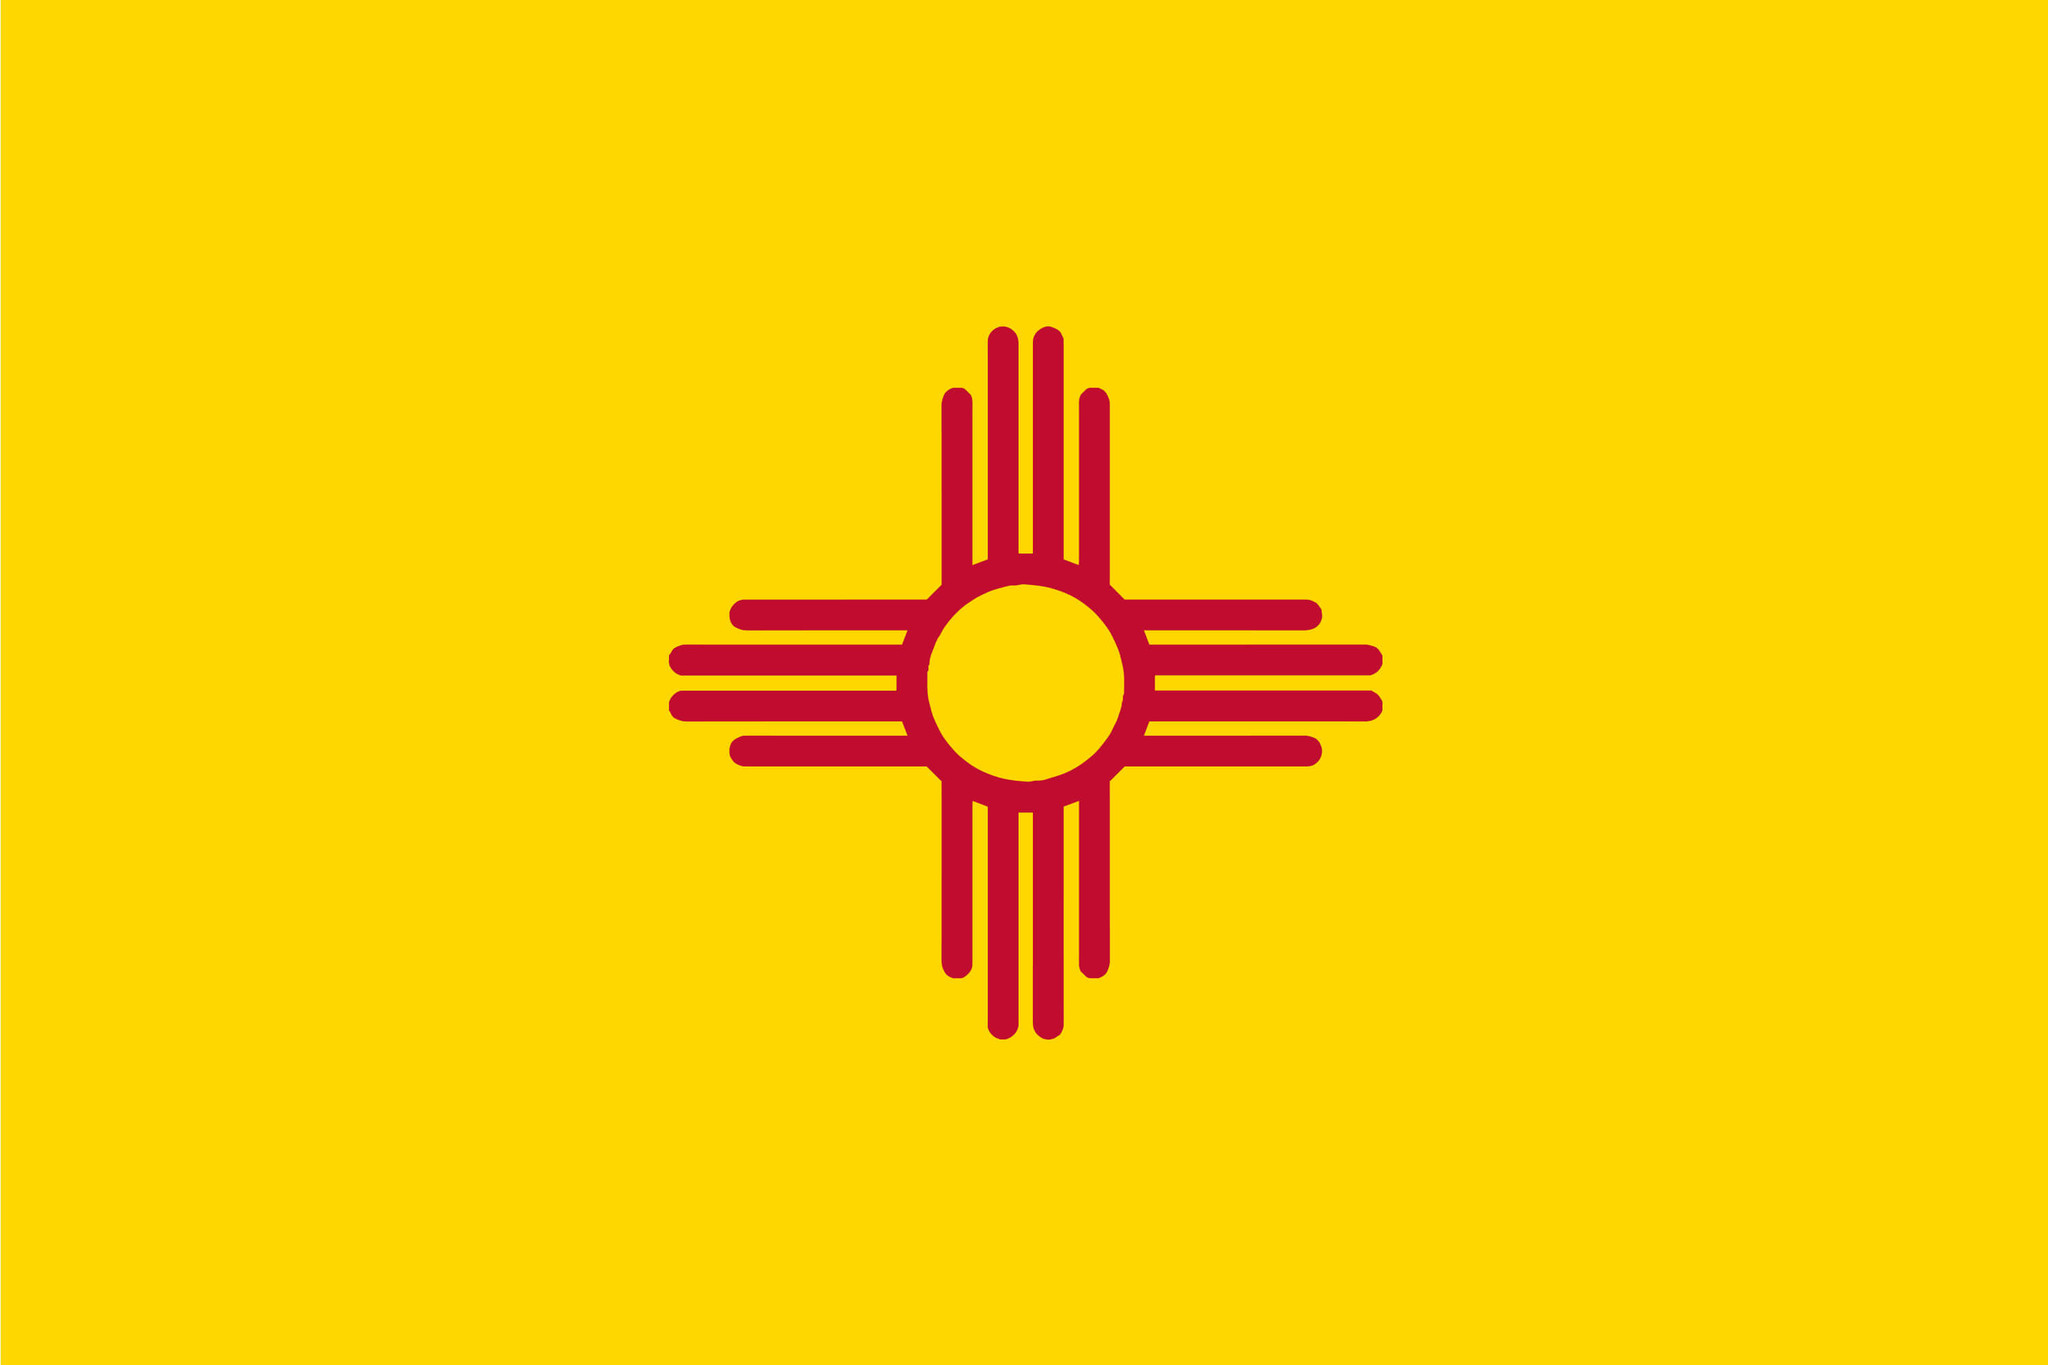 Vlag van New Mexico